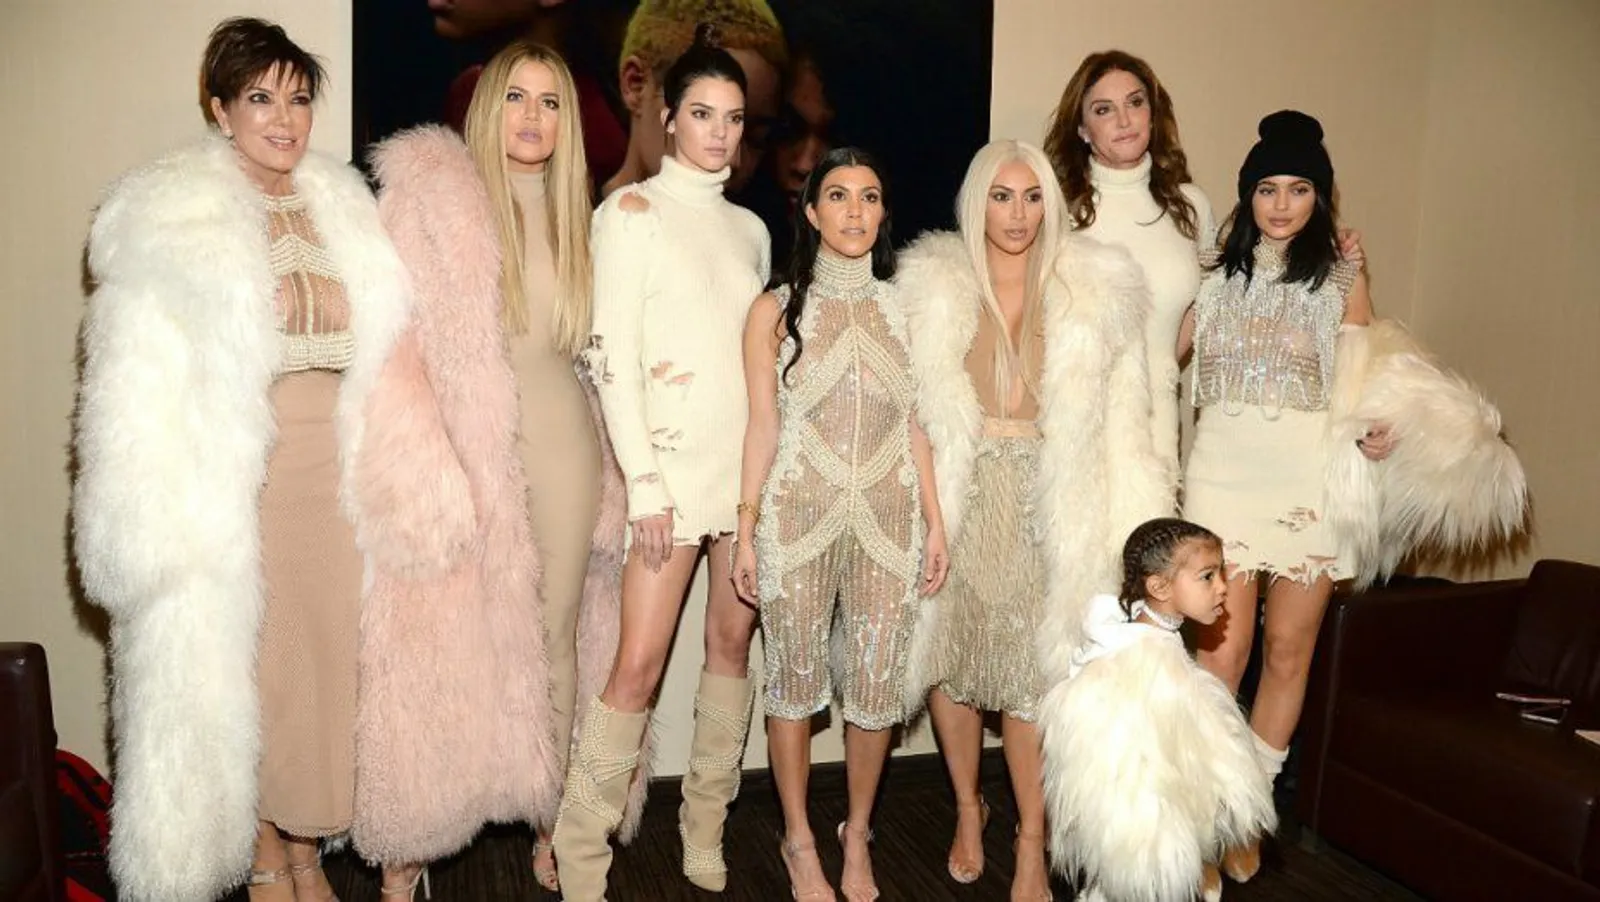 Transformasi Gaya Berpakaian Kardashian - Jenner  dari Tahun ke Tahun